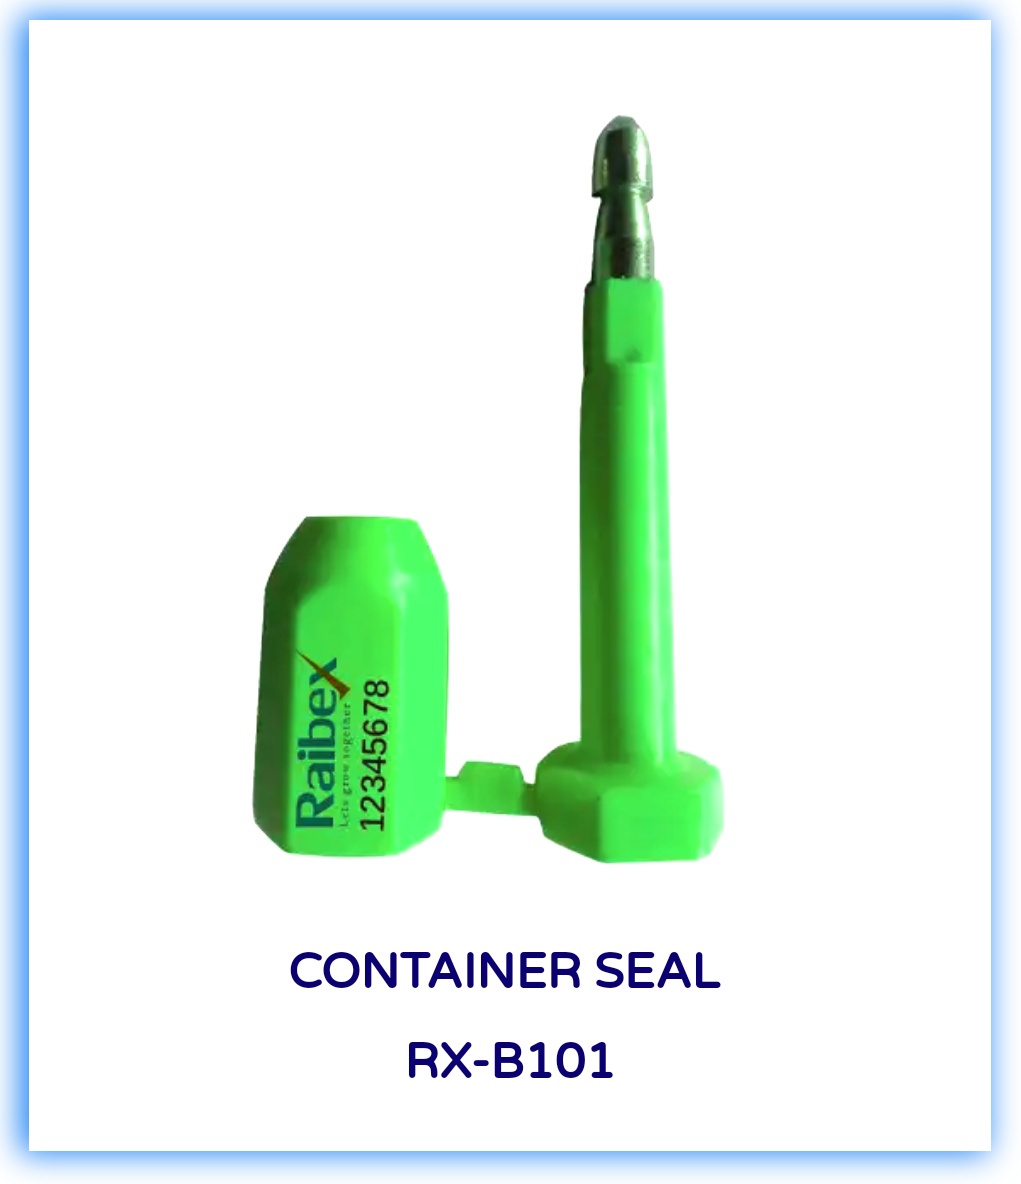 Container Seals in Dubai